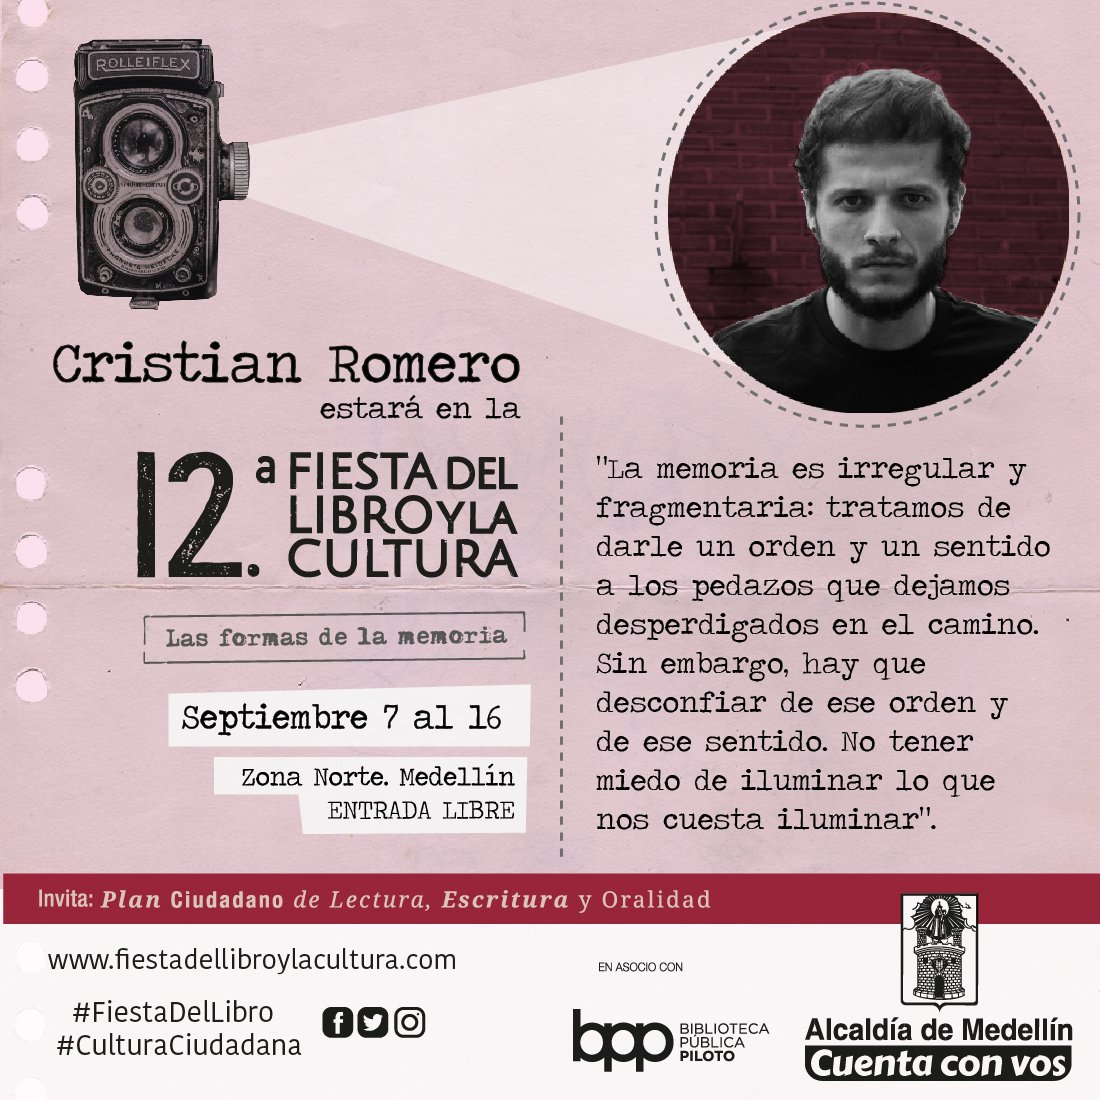 ¿Sabías que Cristian Romero fue seleccionado en la segunda edición de #Bogotá39? Este escritor de nuestra ciudad estará con nosotros en la #FiestaDelLibro y, junto a otros escritores, conversará sobre #LasFormasDeLaMemoria. ¡No te pierdas su visita! #CulturaCiudadana